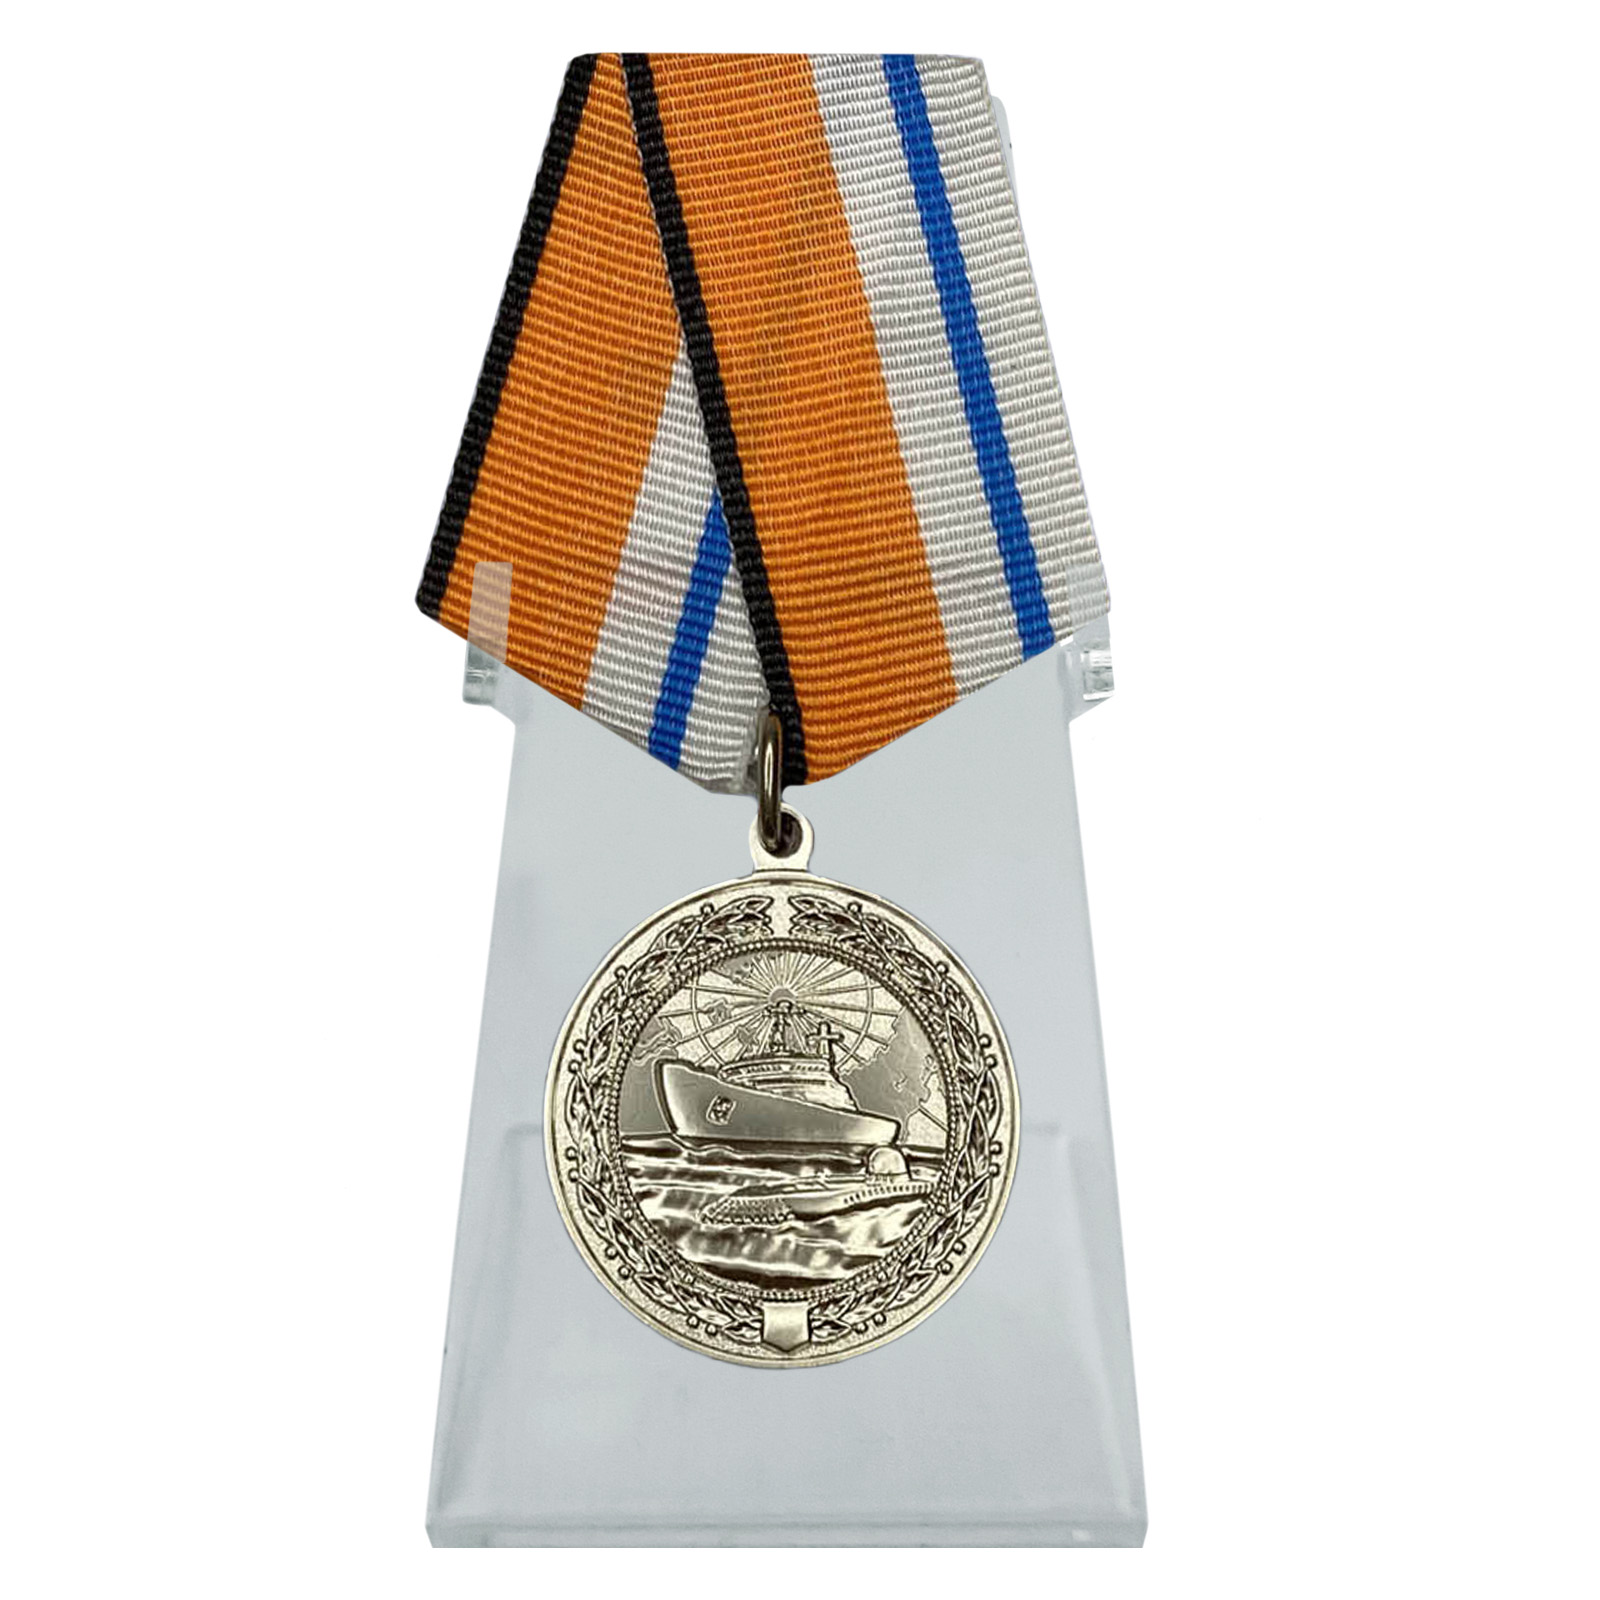 Медаль "За морские заслуги в Арктике" на подставке